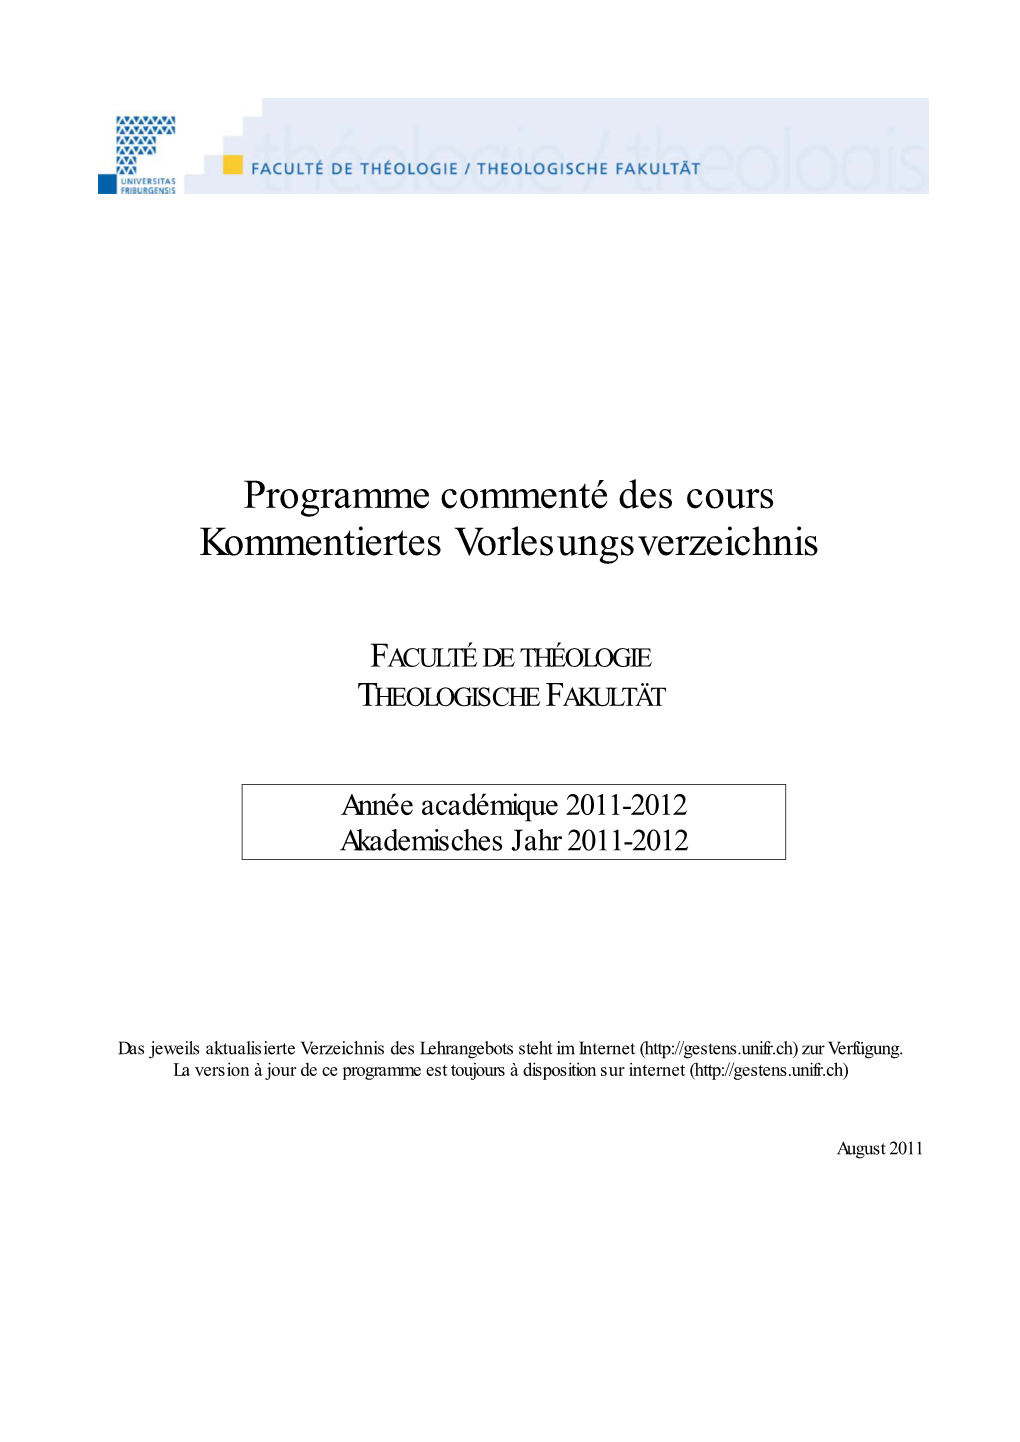 Programme Commenté Des Cours Kommentiertes Vorlesungsverzeichnis